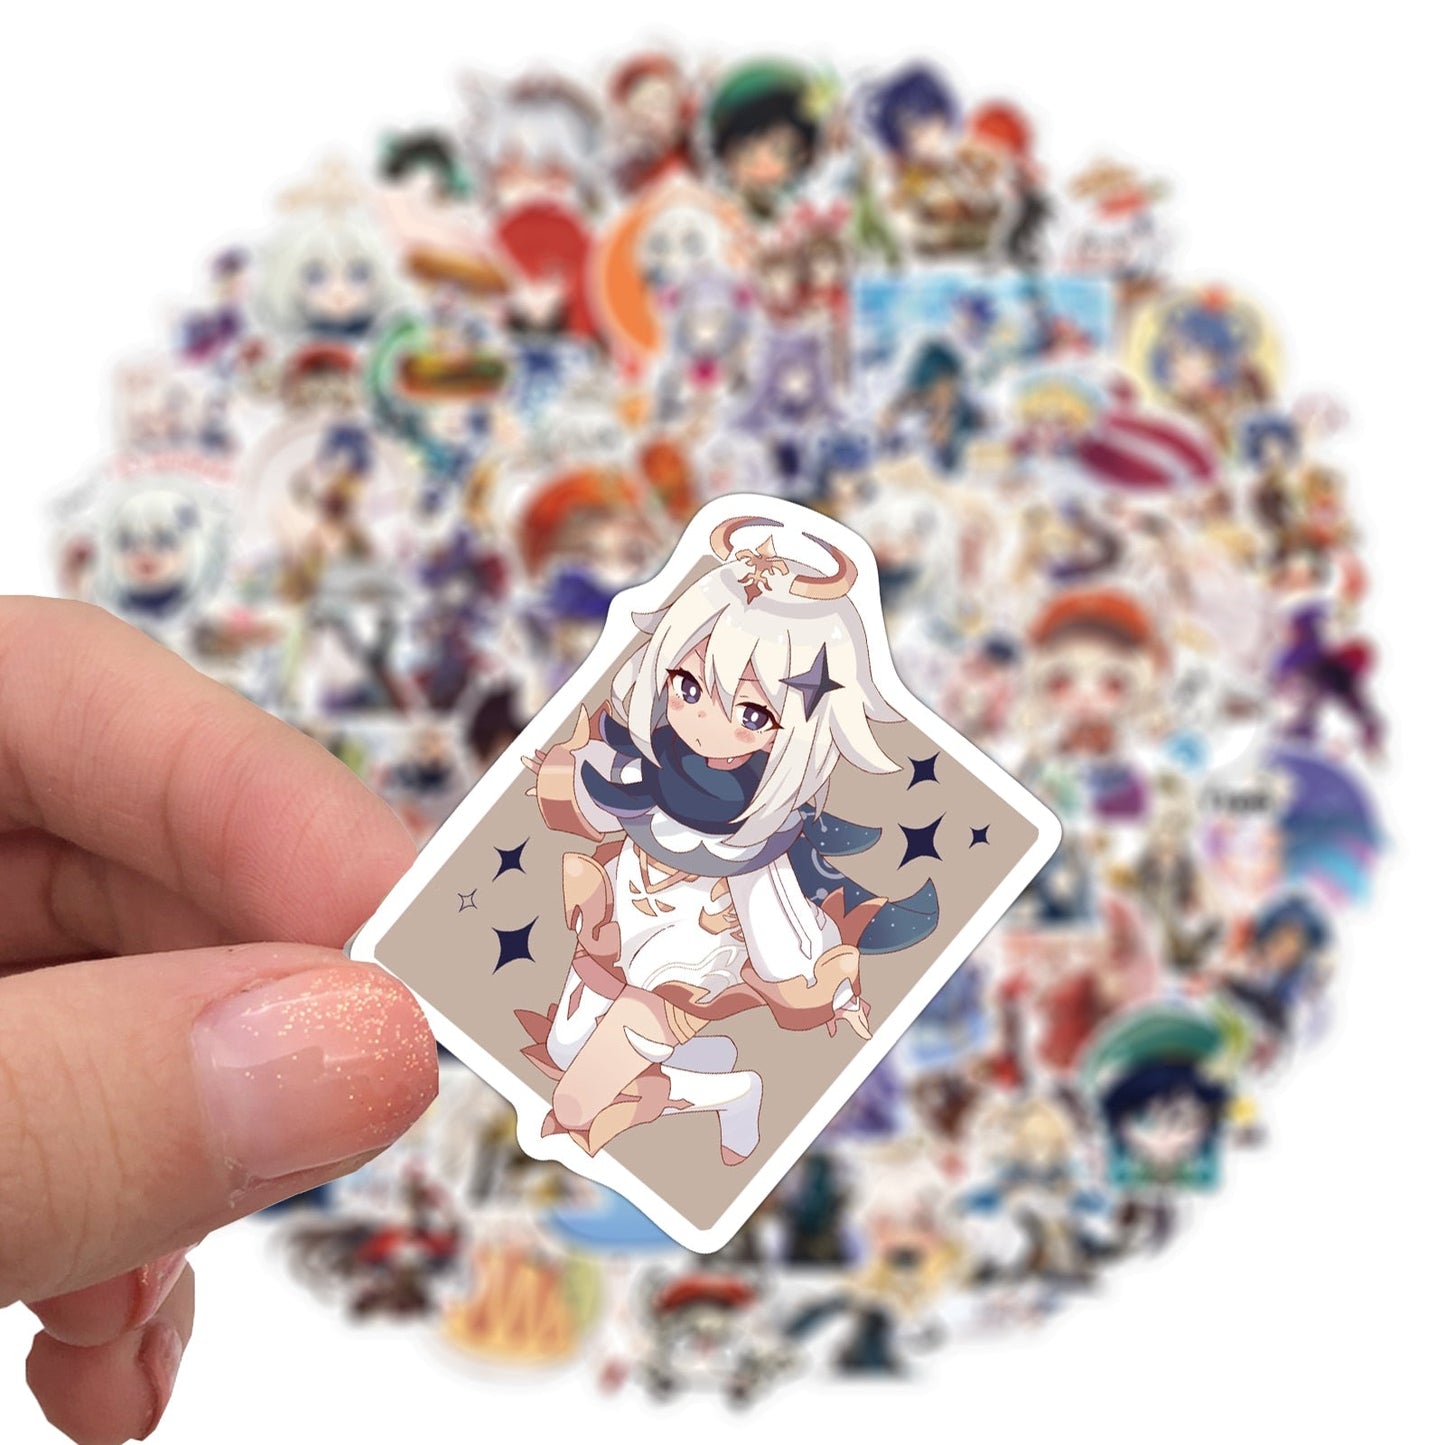  100PCs Chibi Genshin Impact Stickers, Cute Cartoon